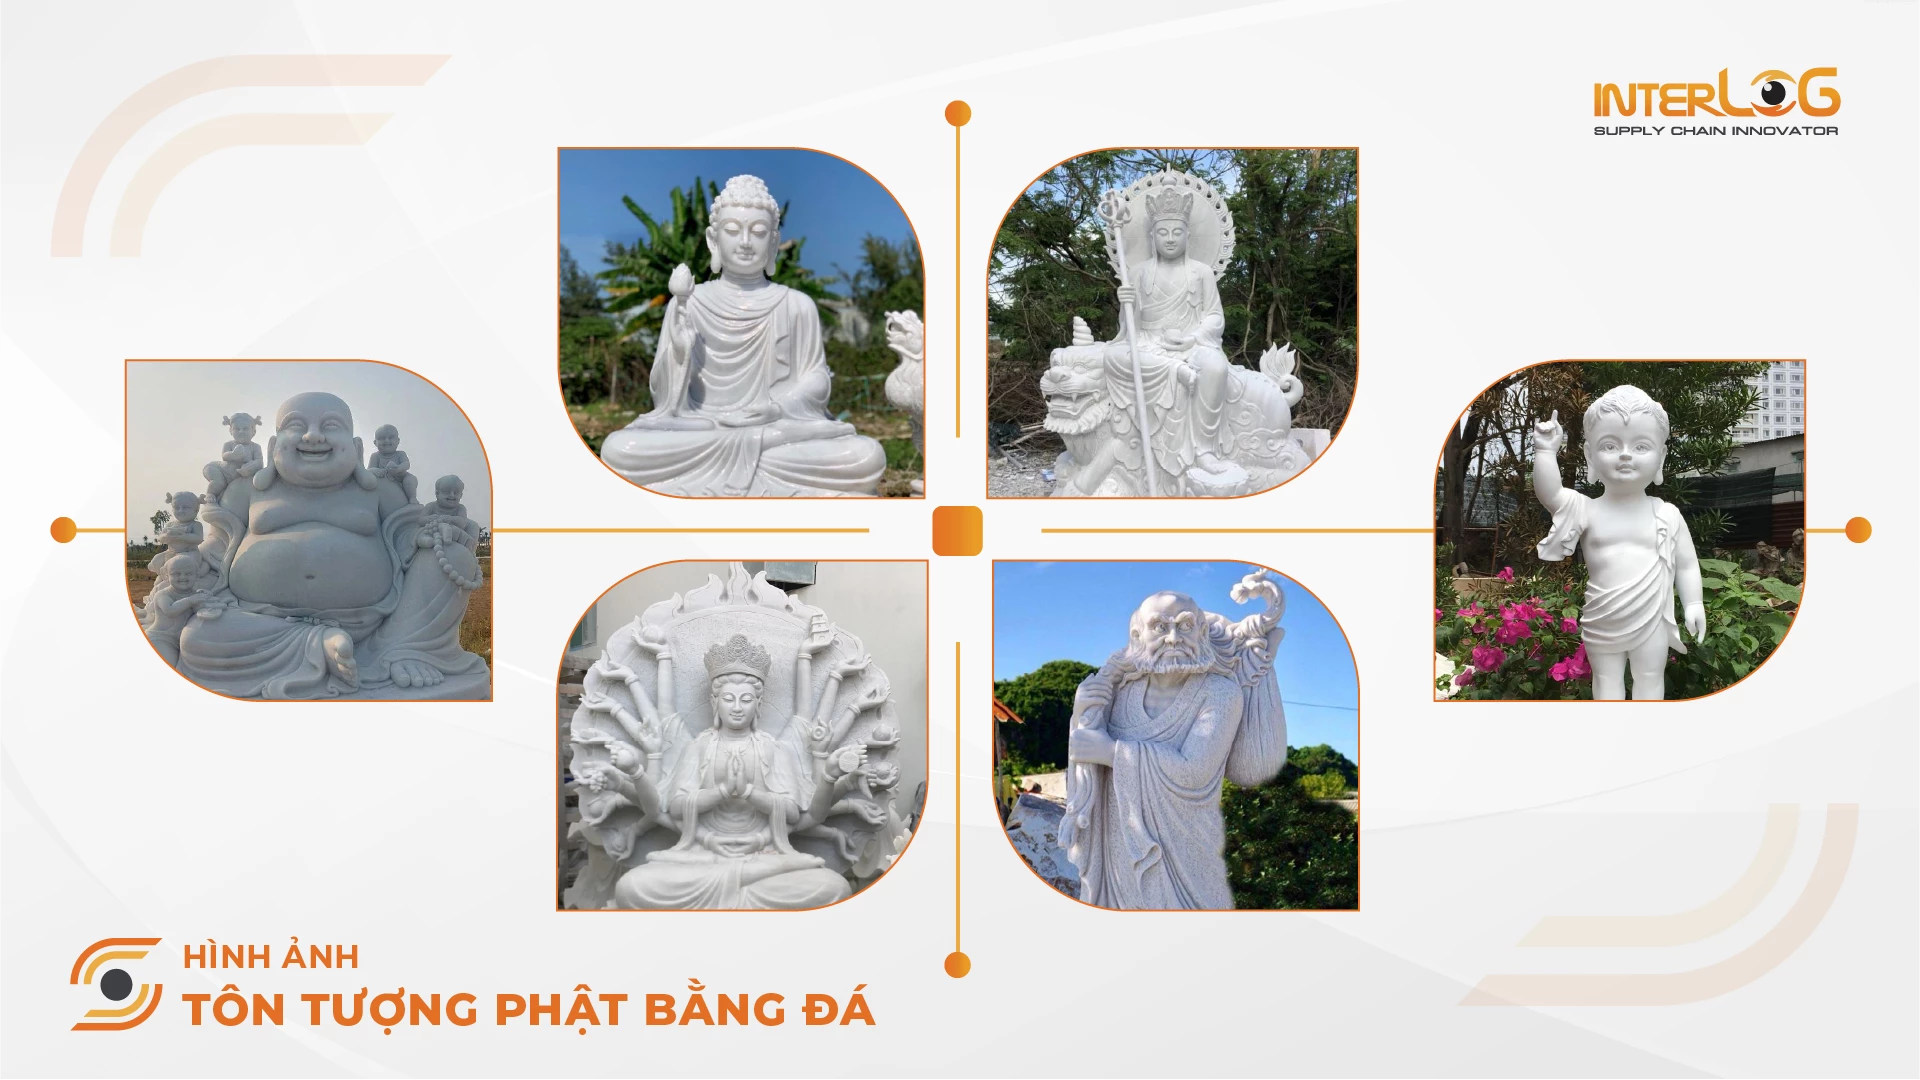 Tuong-Phat-bang-da